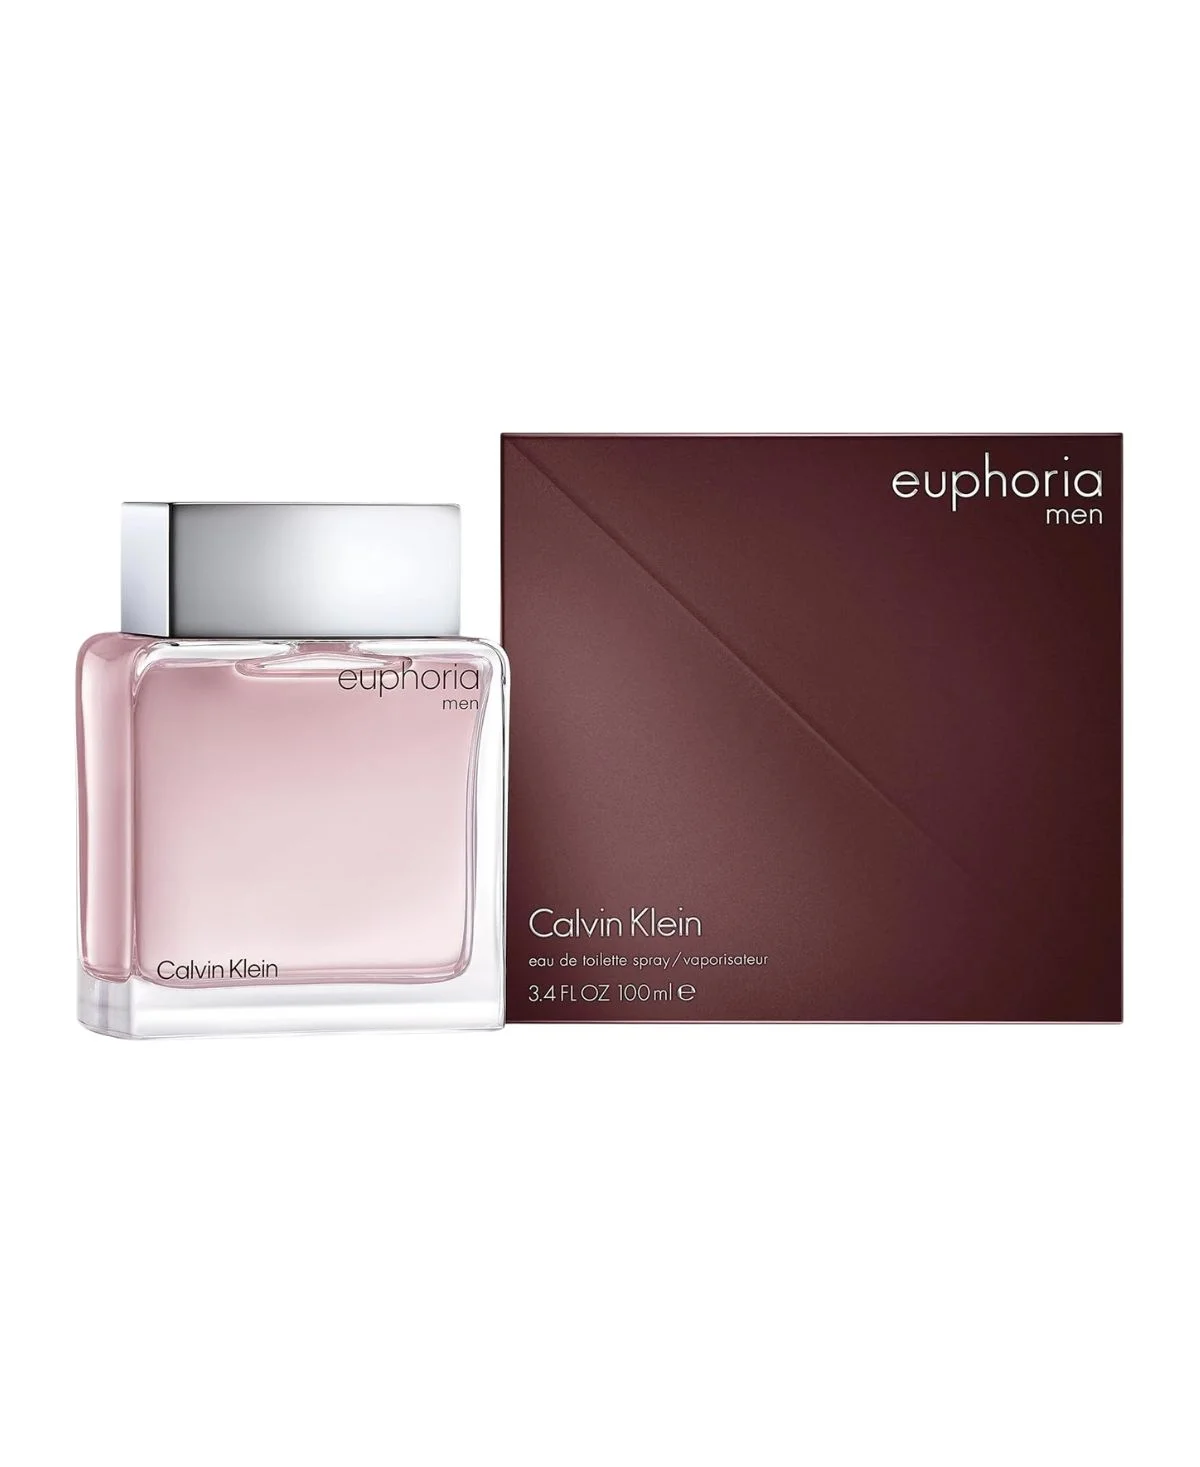 Calvin Klein Euphoria for Men Eau de Toilette (EDT) Spray 3.4 oz (100 ml) 088300178278